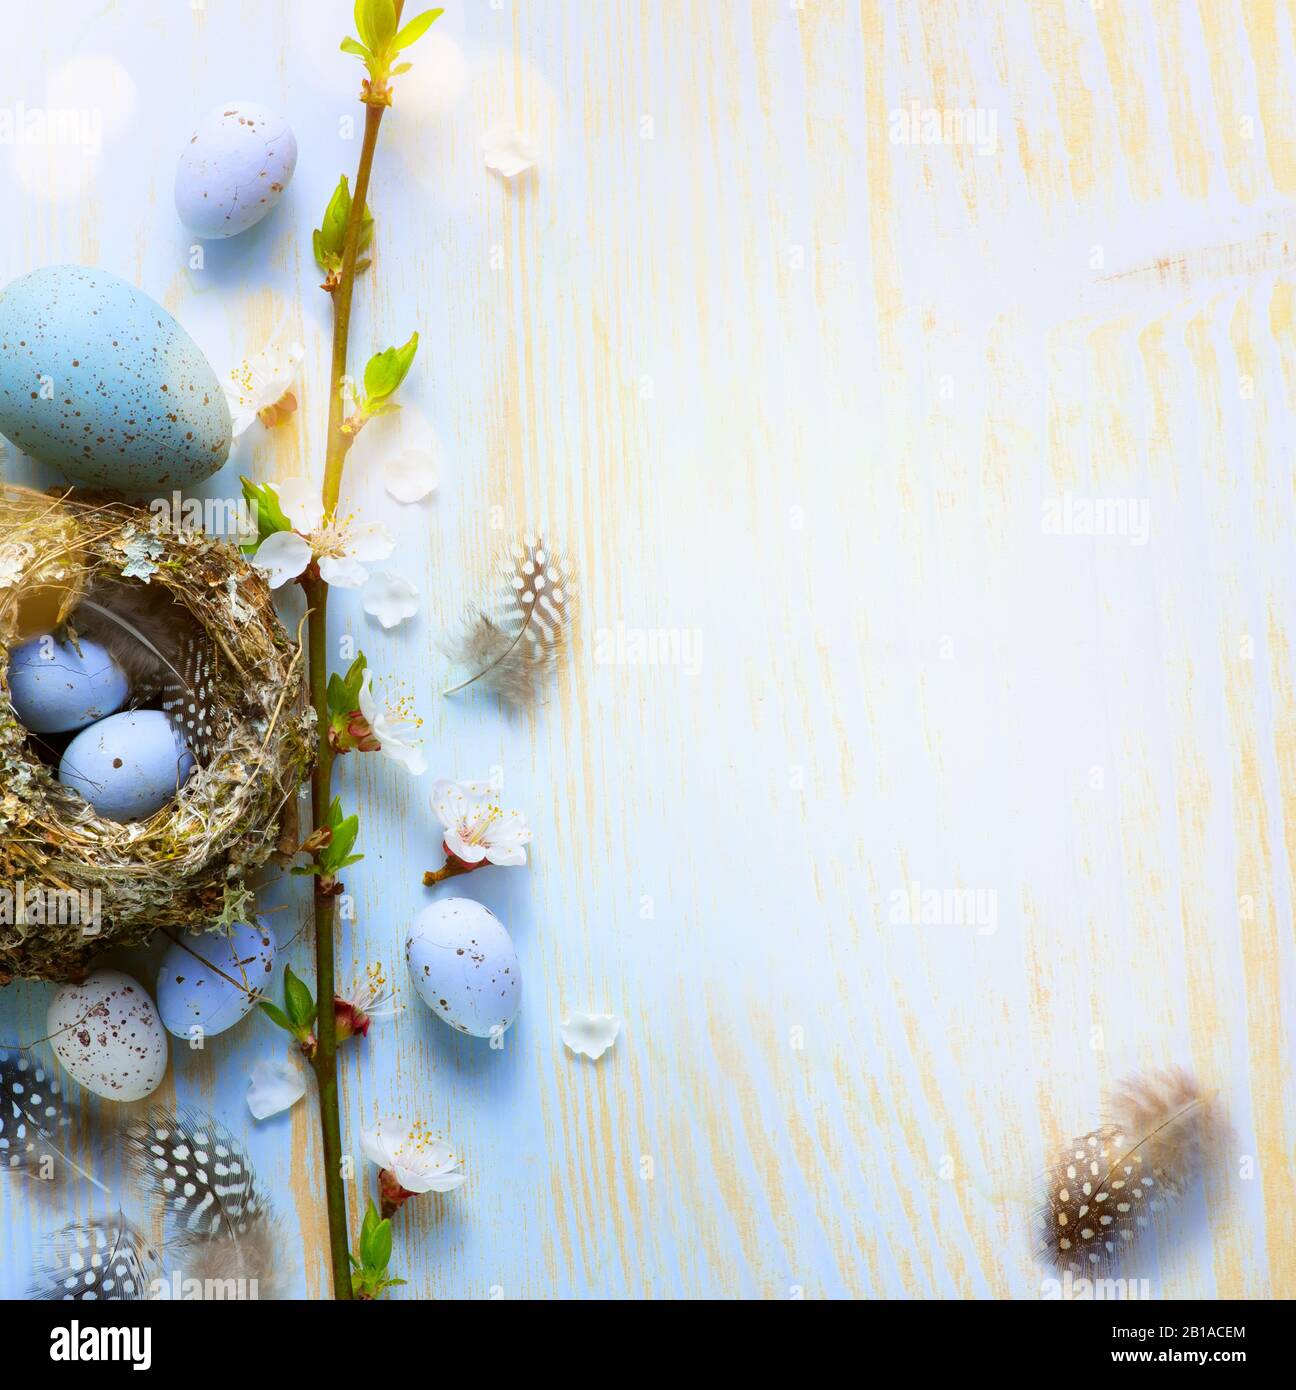 La bannière de Pâques ou le fond de carte de vœux; les fleurs d'arbre de printemps et les œufs de Pâques dans les oiseaux nichent sur fond ensoleillé en bois clair Banque D'Images